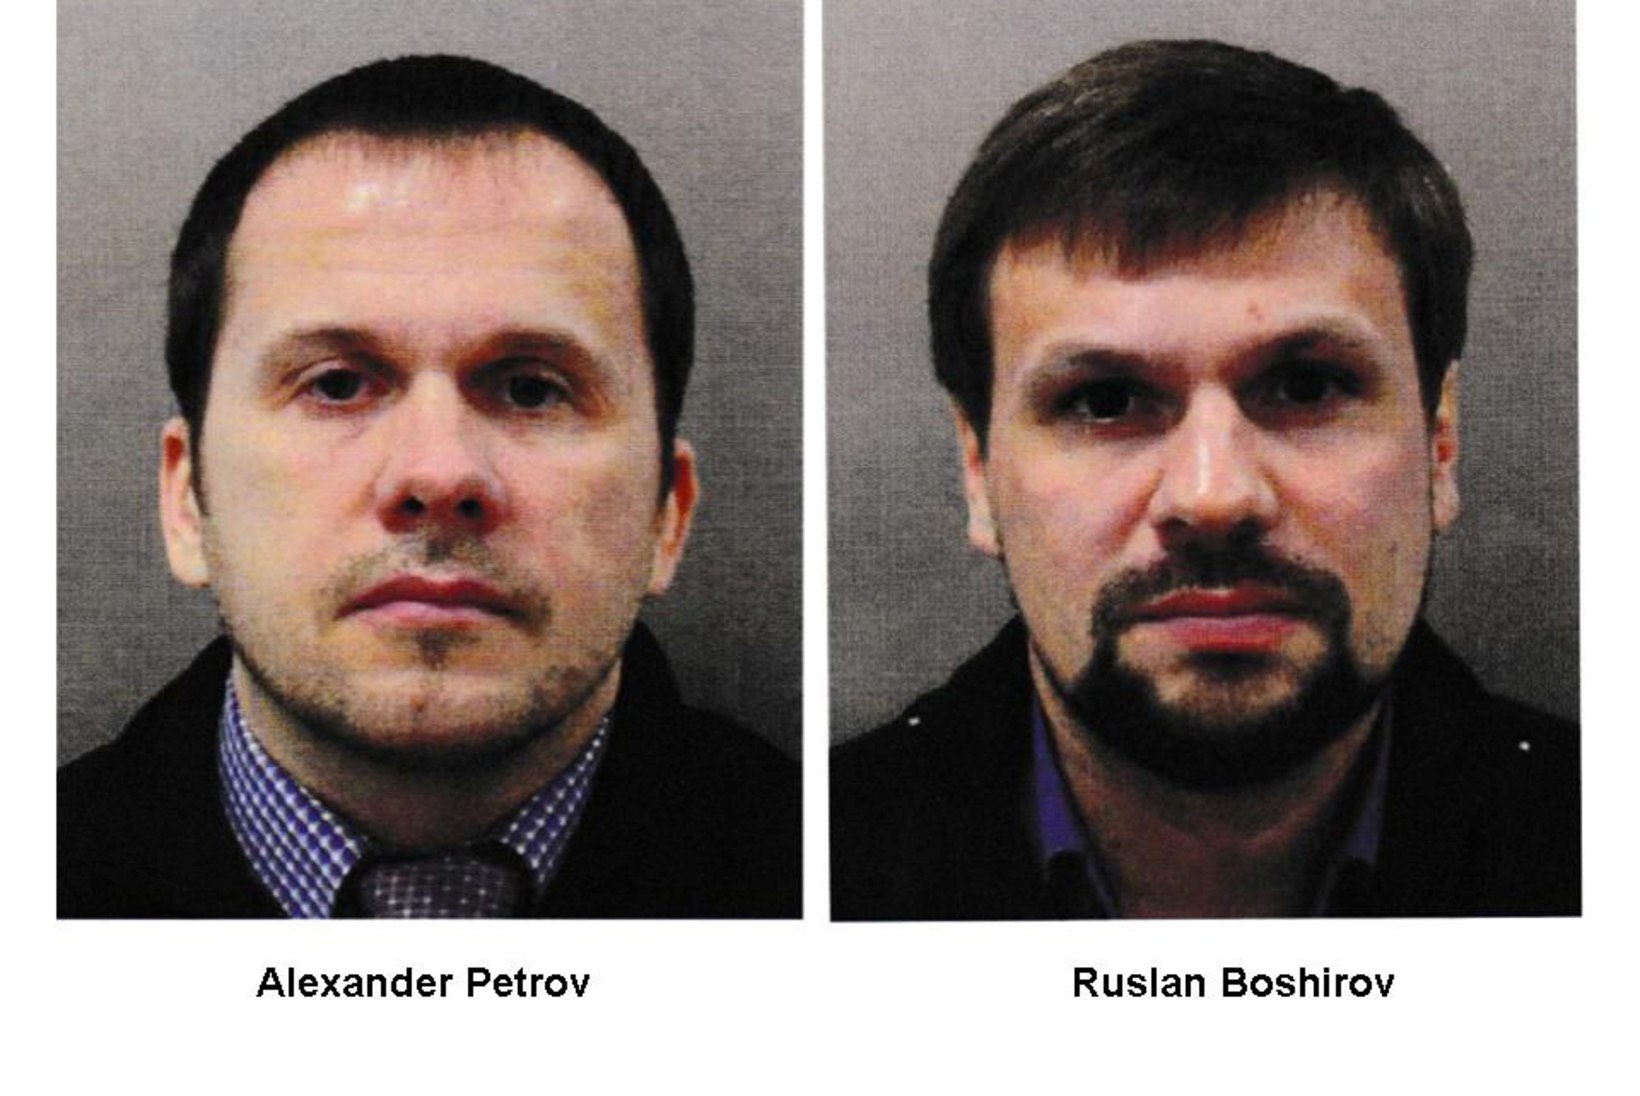 SKRIPALI JUHTUM: Briti võimud kuulutasid kaks venelast tagaotsitavaks